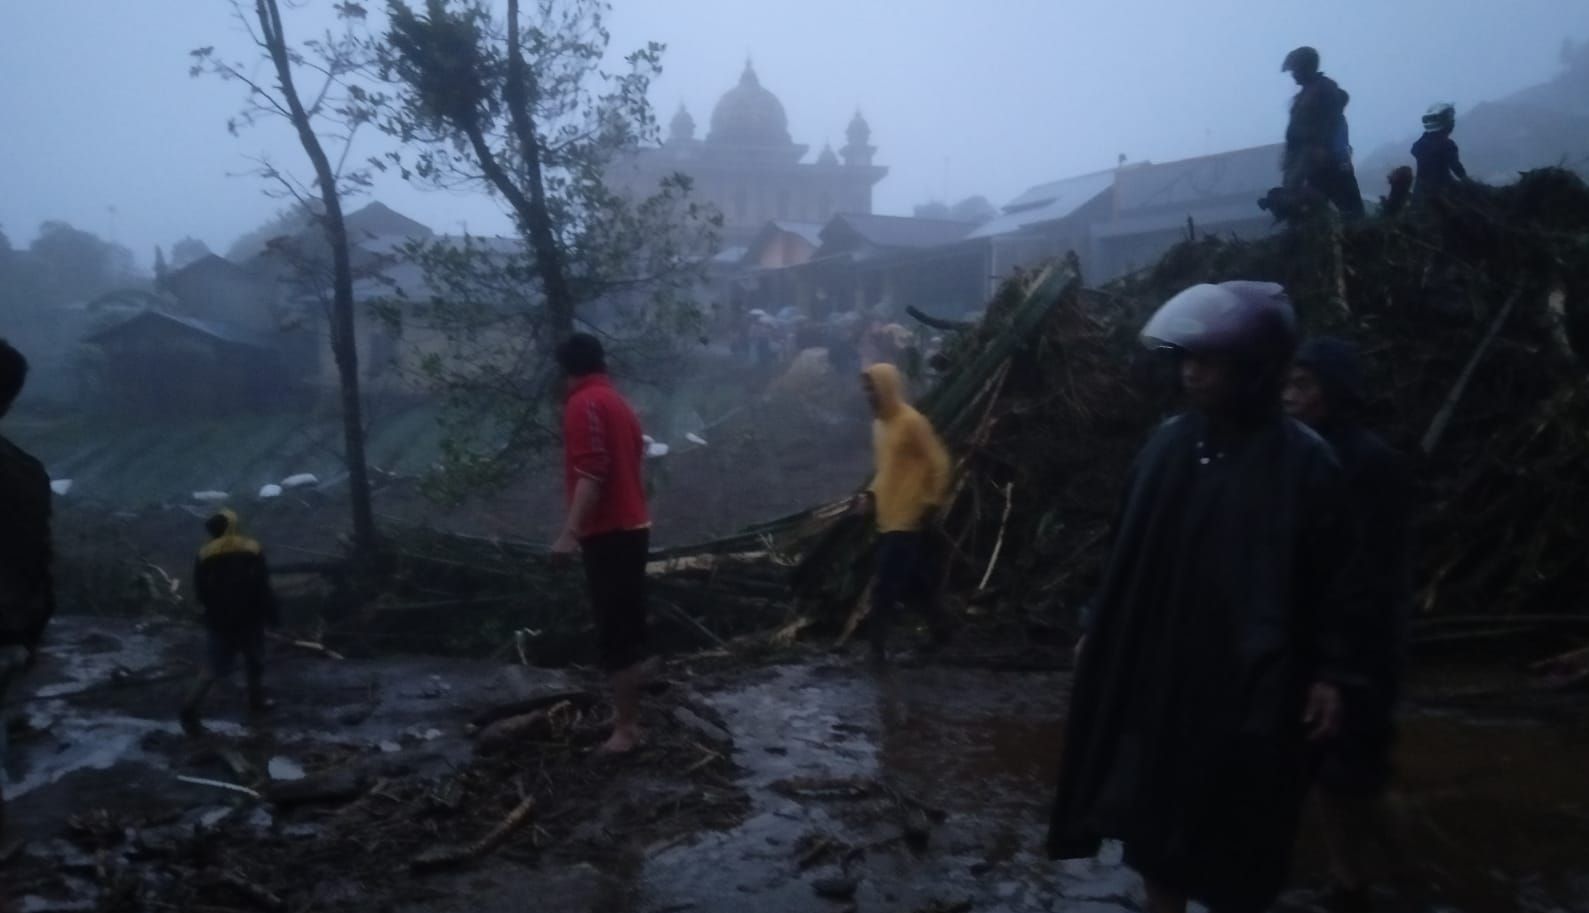 Gunung Malang Purbalingga Diterjang Banjir, Rumah Rusak, Motor Hilang hingga Jalan Tertutup.